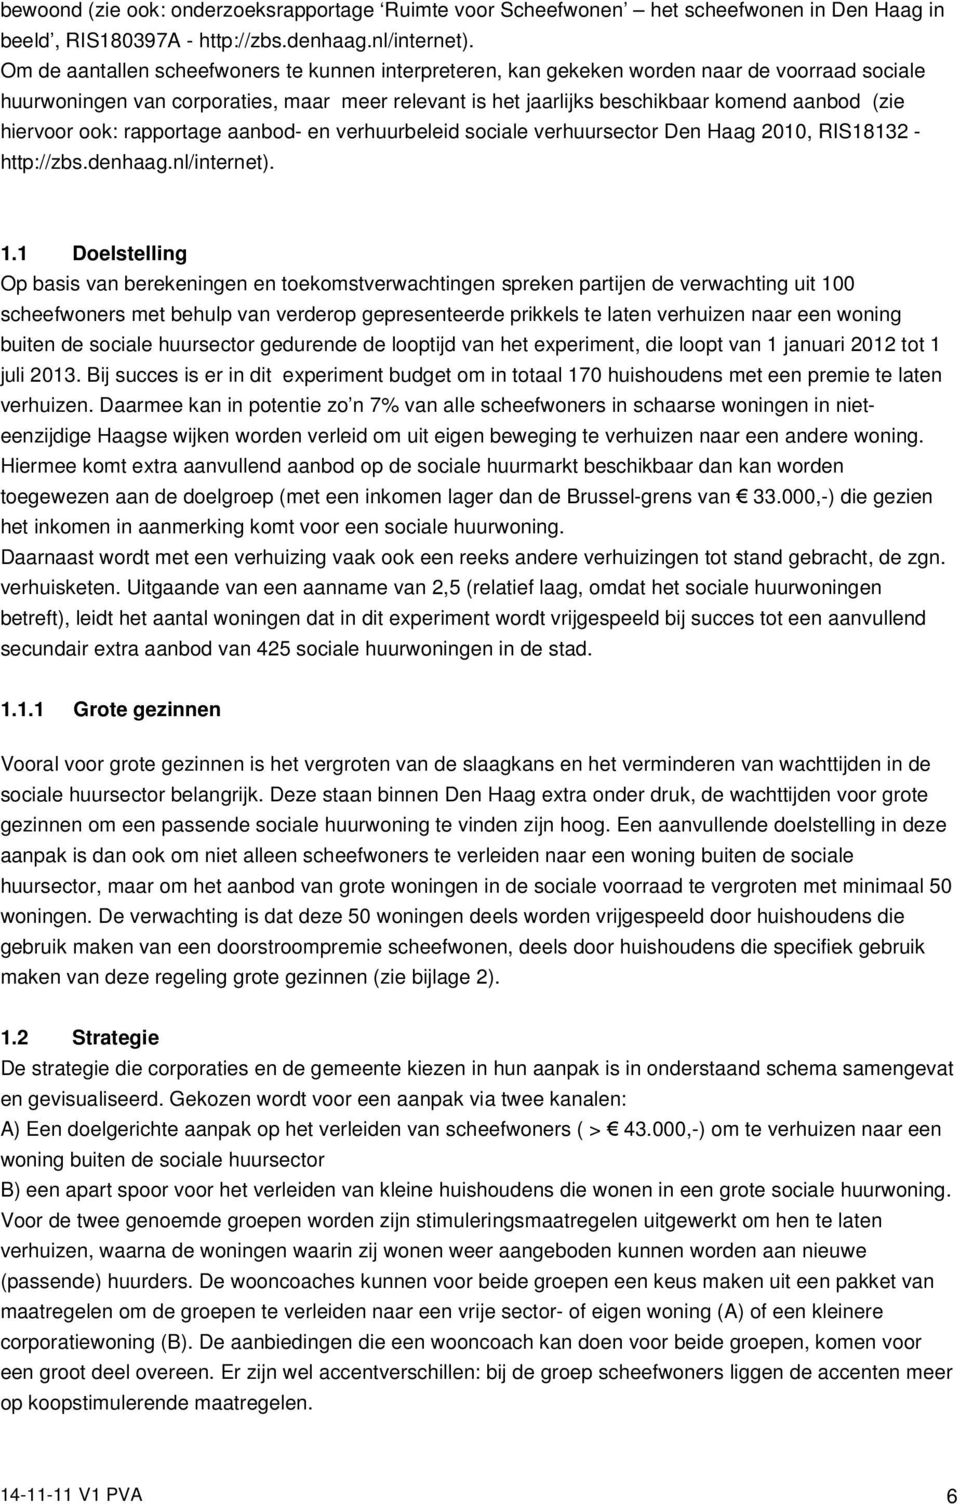 hiervoor ook: rapportage aanbod- en verhuurbeleid sociale verhuursector Den Haag 2010, RIS18132 - http://zbs.denhaag.nl/internet). 1.